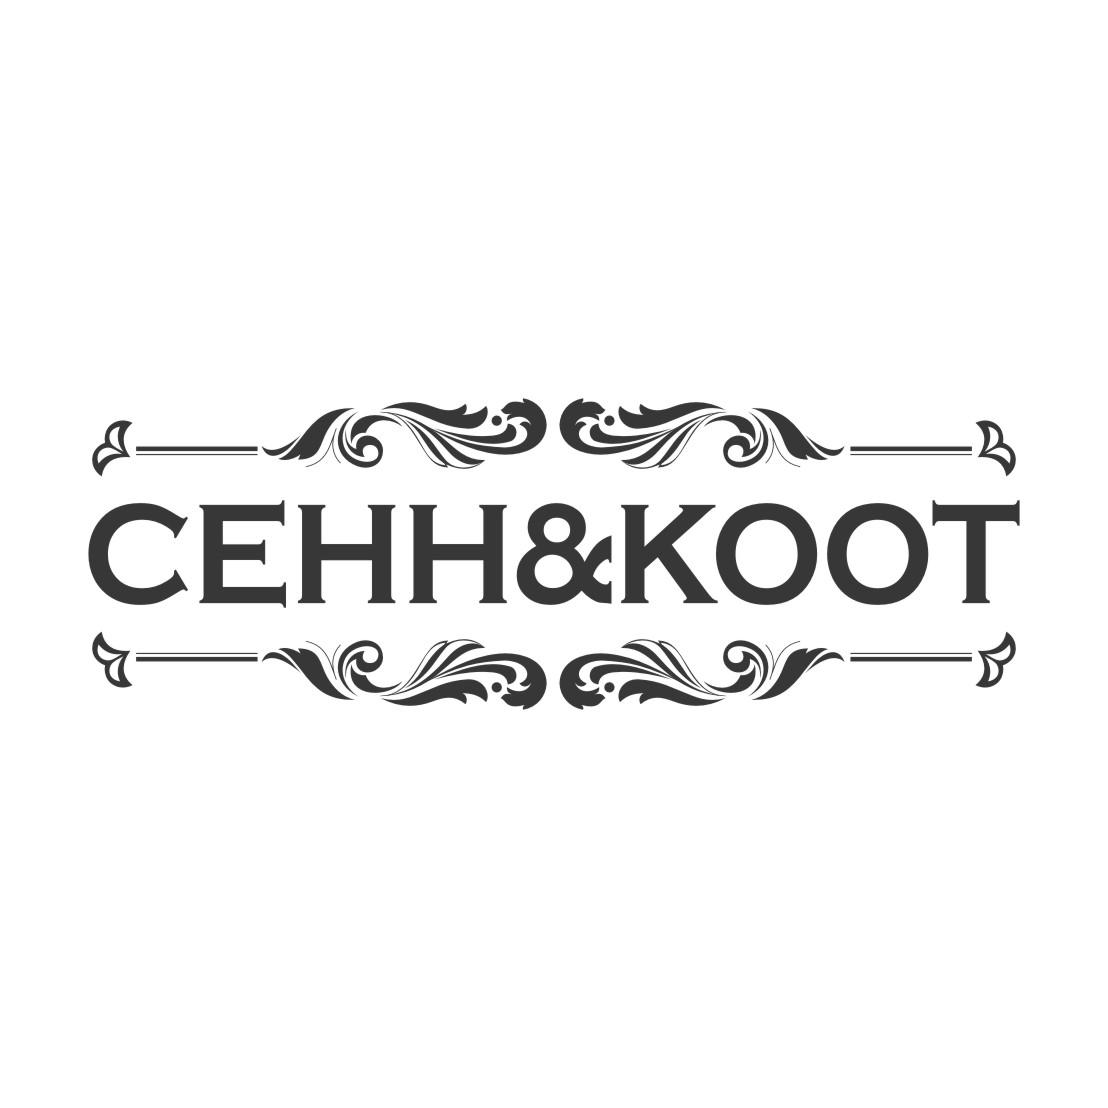 CEHH&KOOT